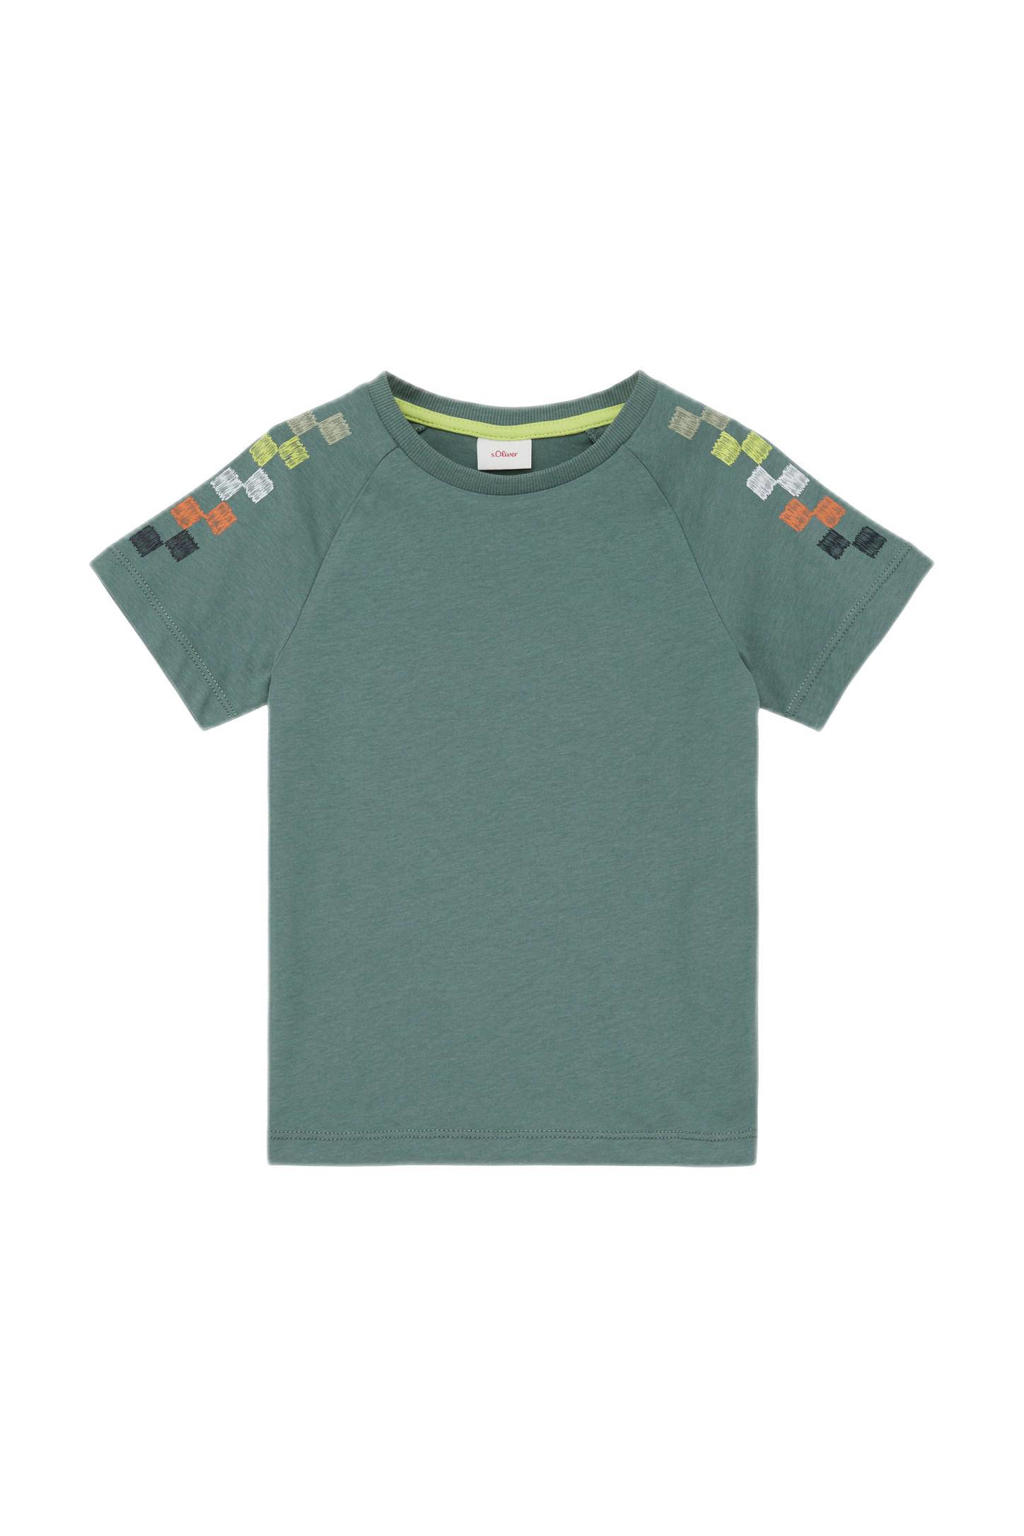 Petrolkleurige jongens s.Oliver T-shirt van katoen met backprint, korte mouwen en ronde hals